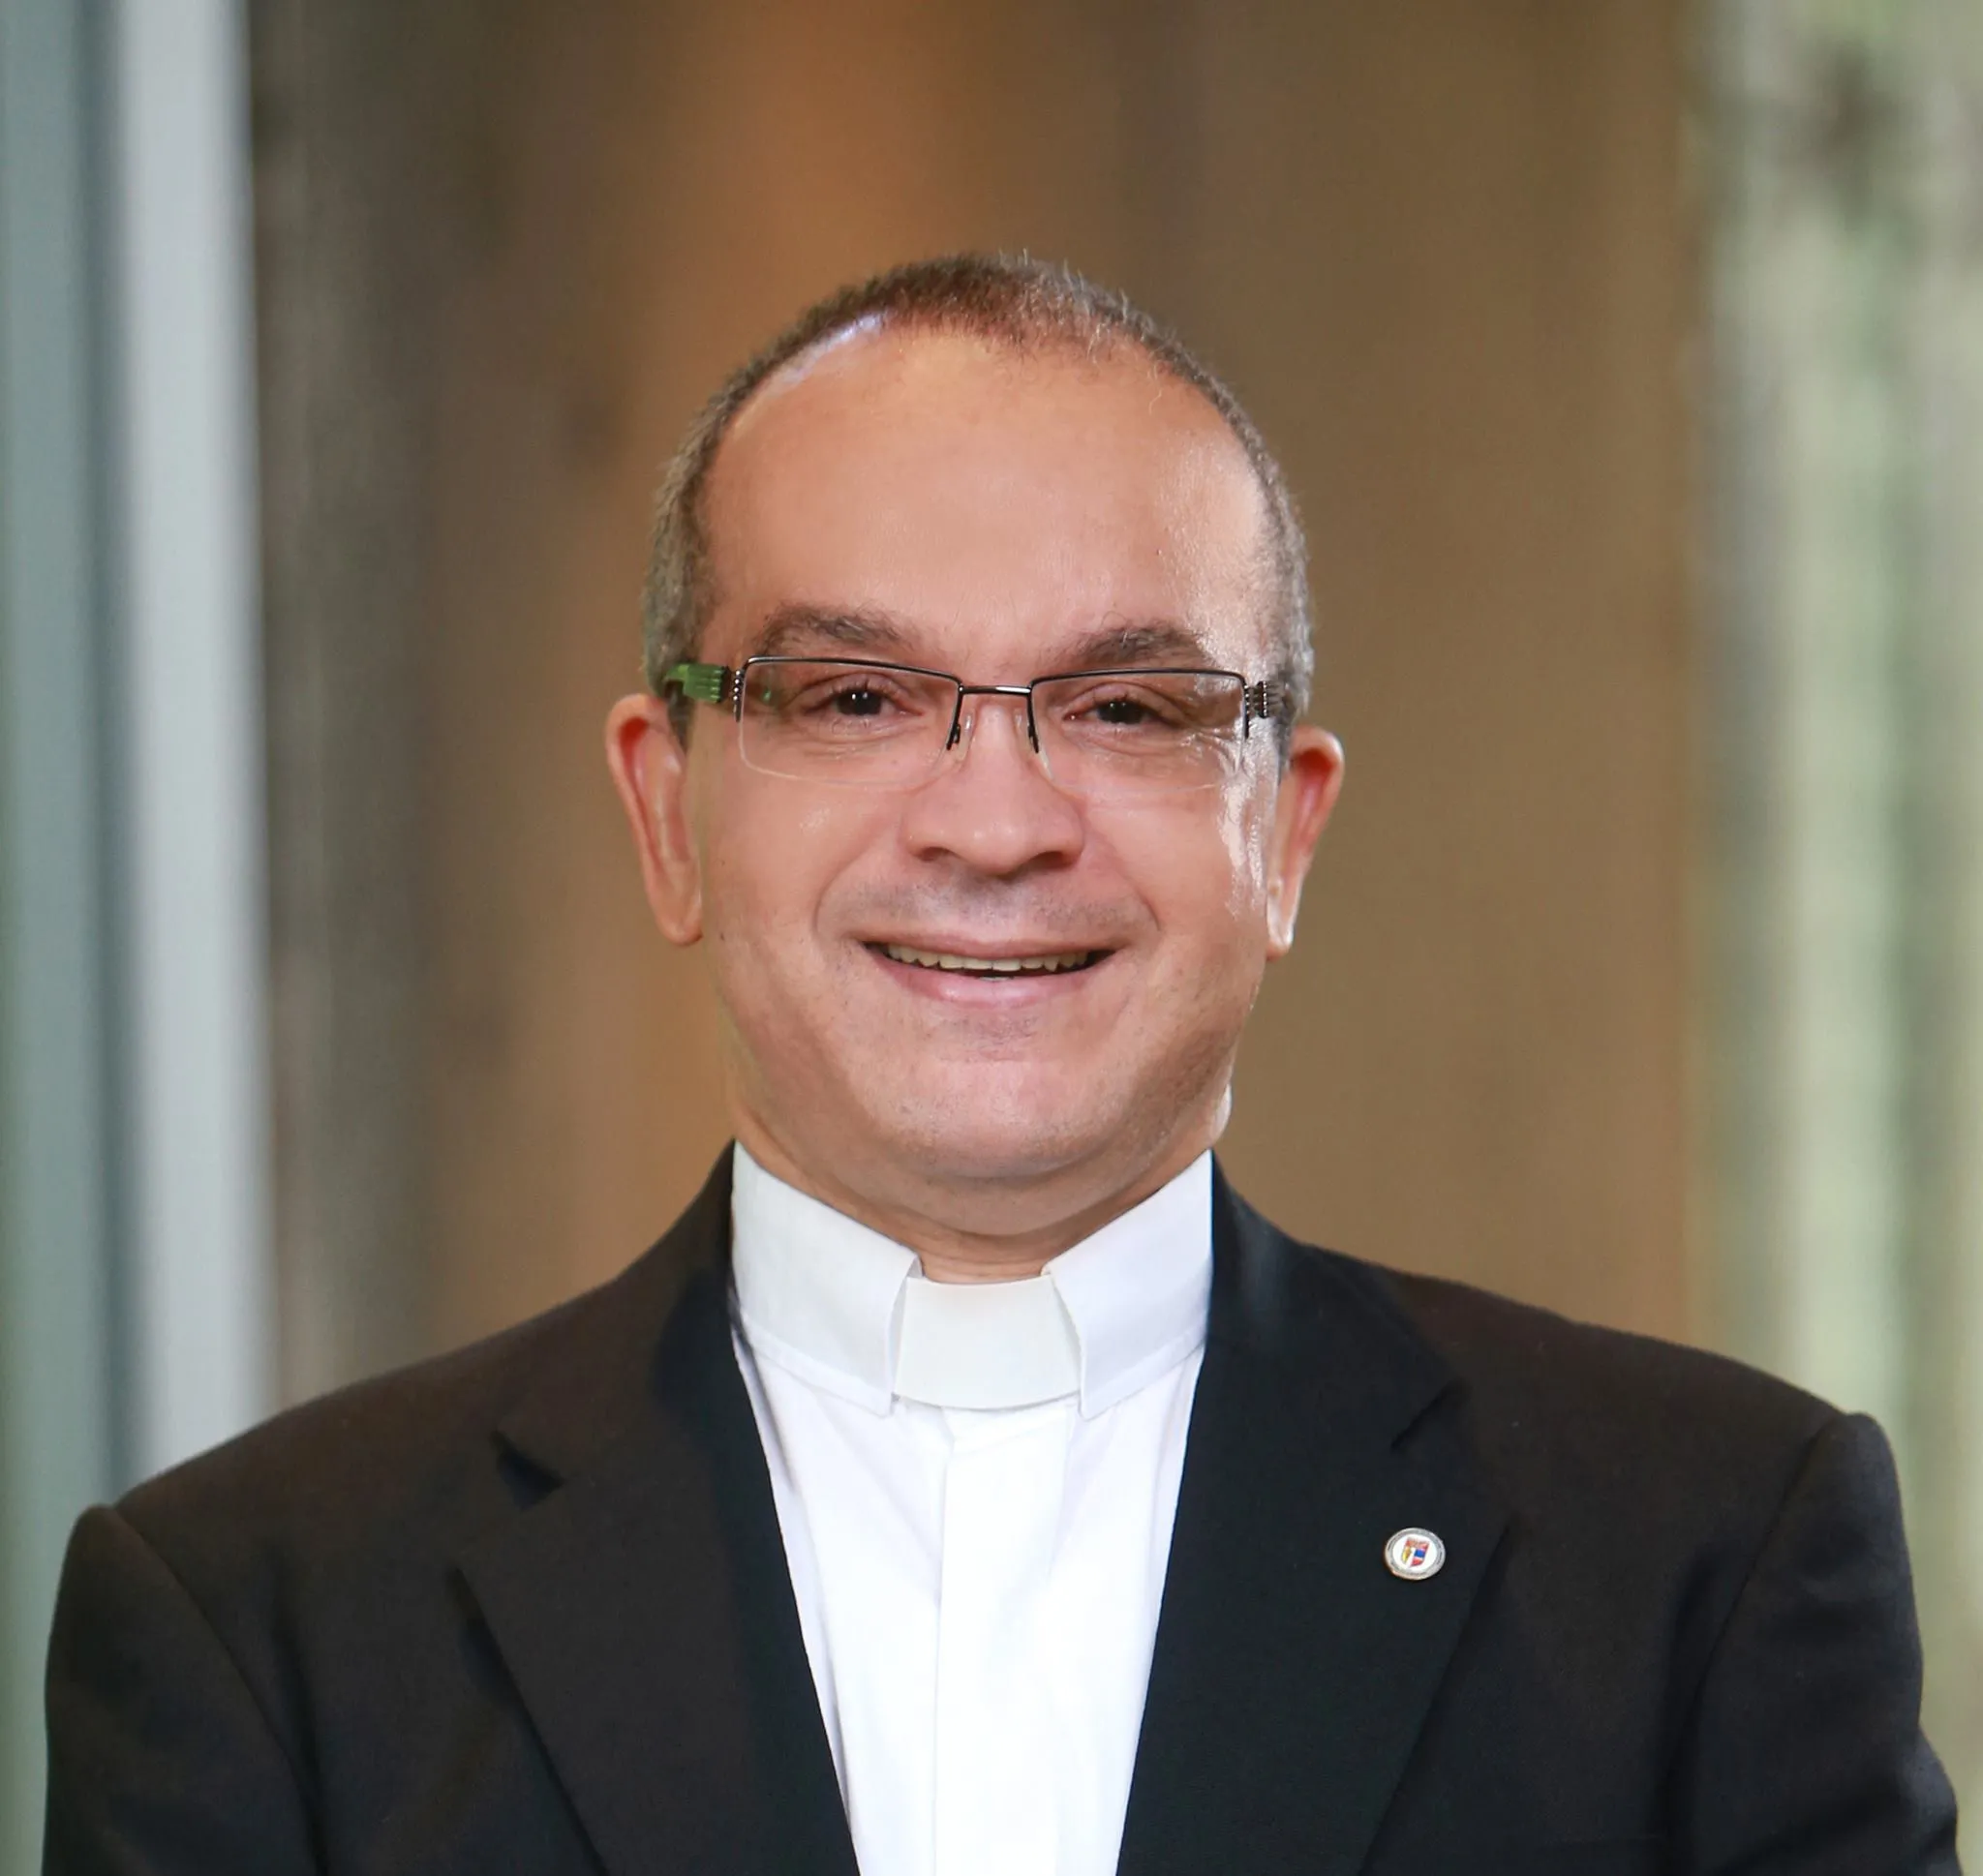 Obispo de SFM le responde a Masalles sobre la ausencia de liderazgo en Iglesia